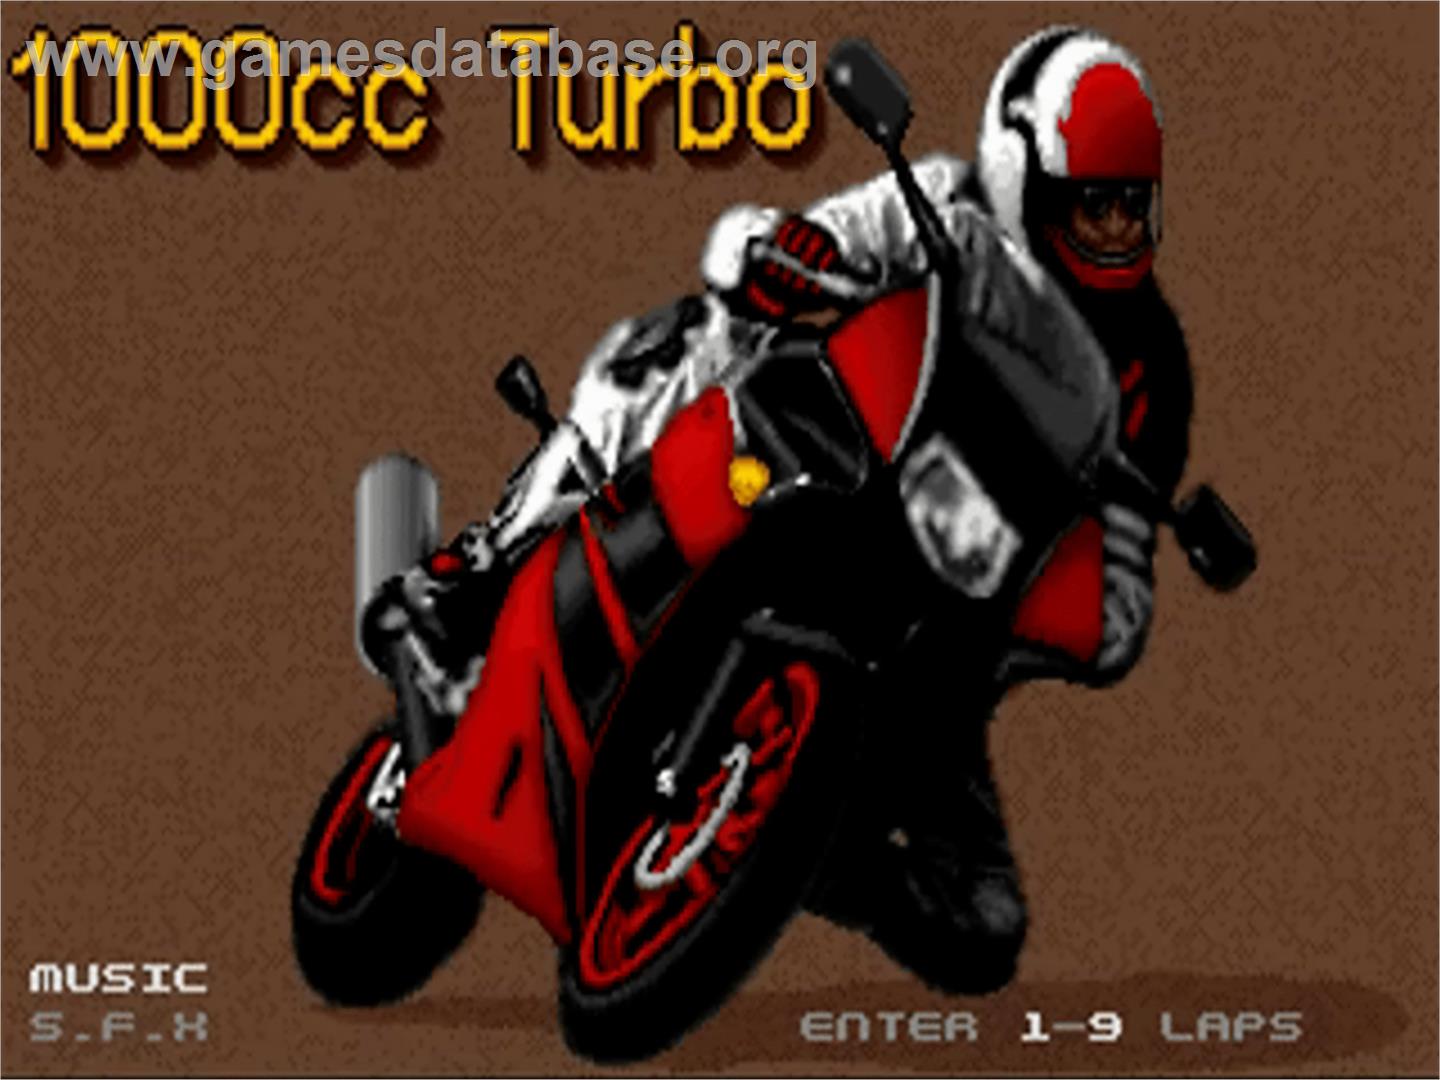 1000cc Turbo - Commodore Amiga - Artwork - Title Screen